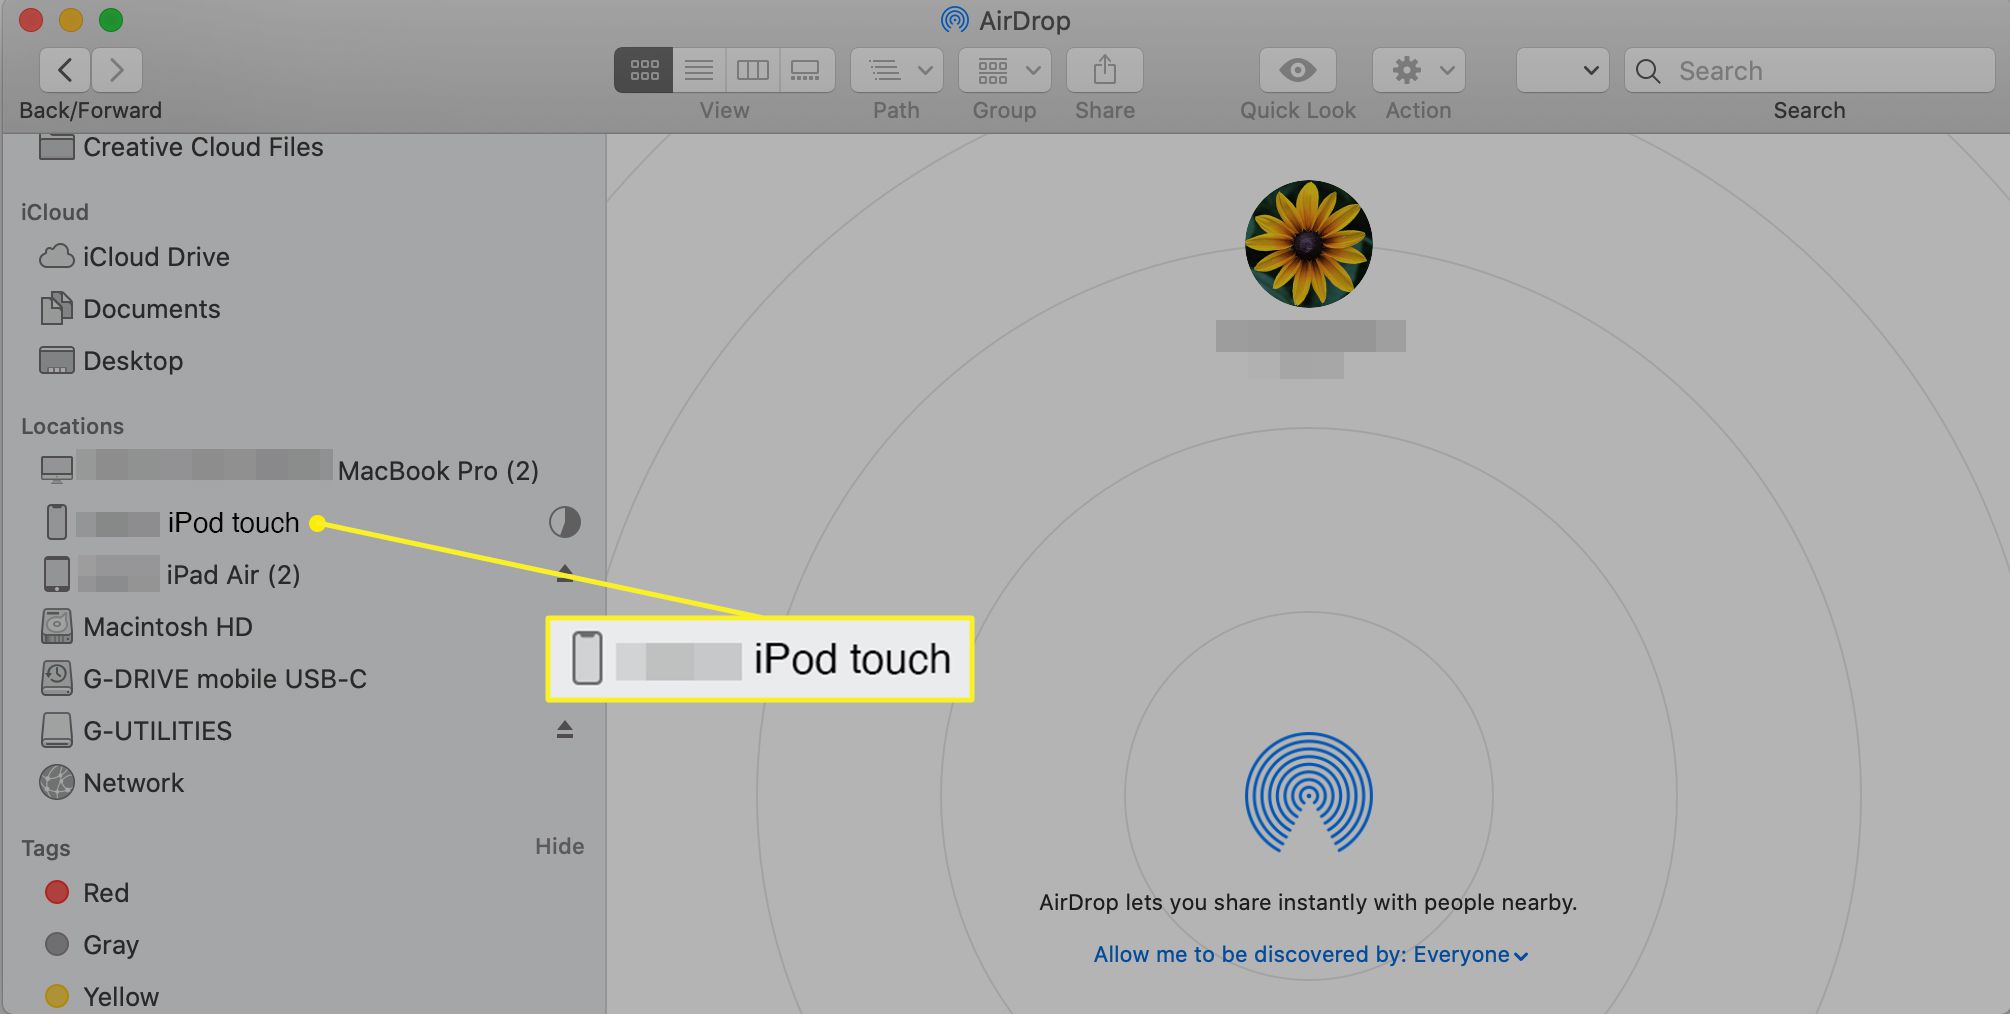 O iPod touch selecionado na barra lateral do Finder